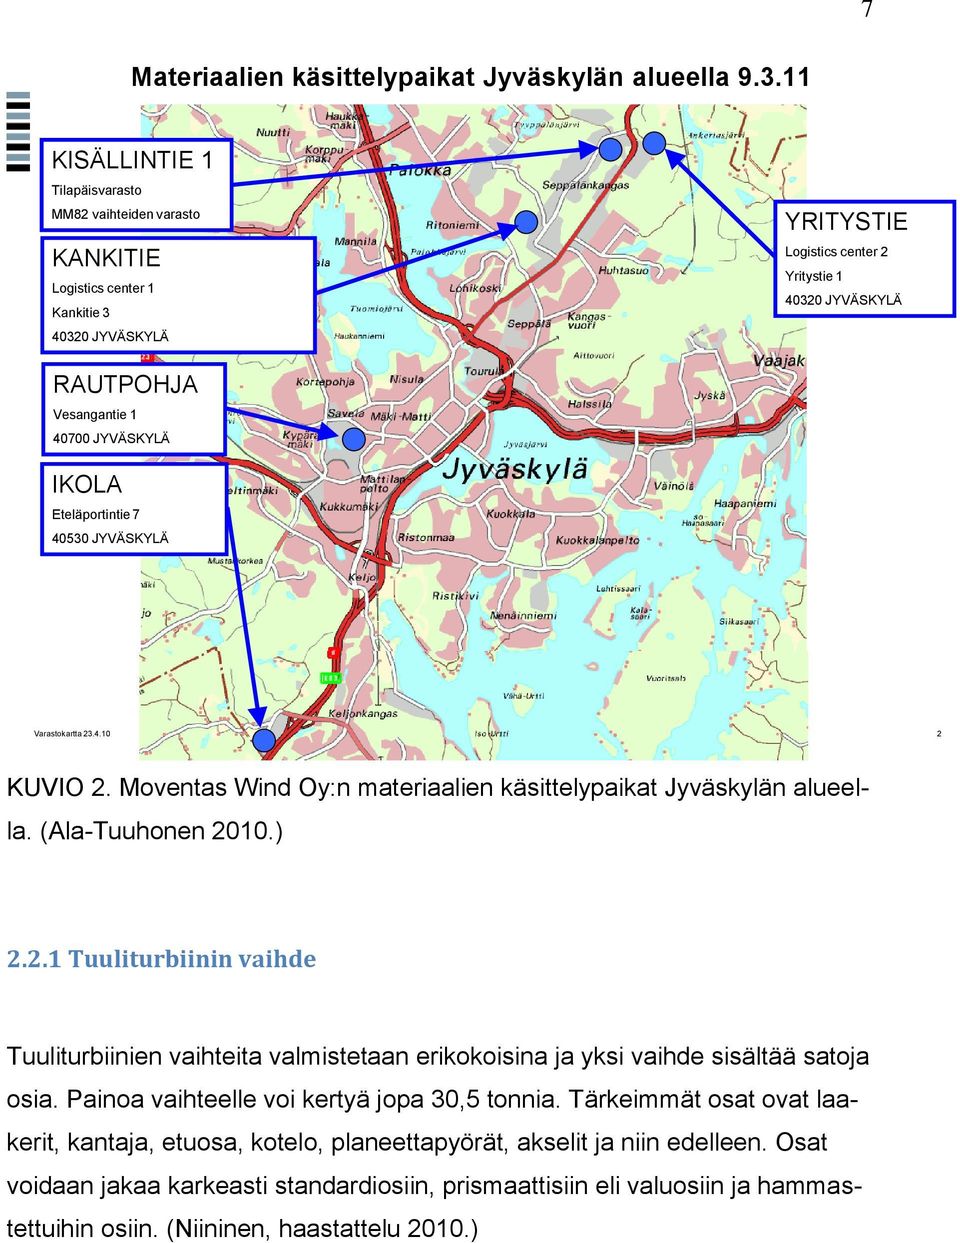 JYVÄSKYLÄ IKOLA Eteläportintie 7 40530 JYVÄSKYLÄ Varastokartta 23.4.10 2 KUVIO 2. Moventas Wind Oy:n materiaalien käsittelypaikat Jyväskylän alueella. (Ala-Tuuhonen 2010.) 2.2.1 Tuuliturbiinin vaihde Tuuliturbiinien vaihteita valmistetaan erikokoisina ja yksi vaihde sisältää satoja osia.